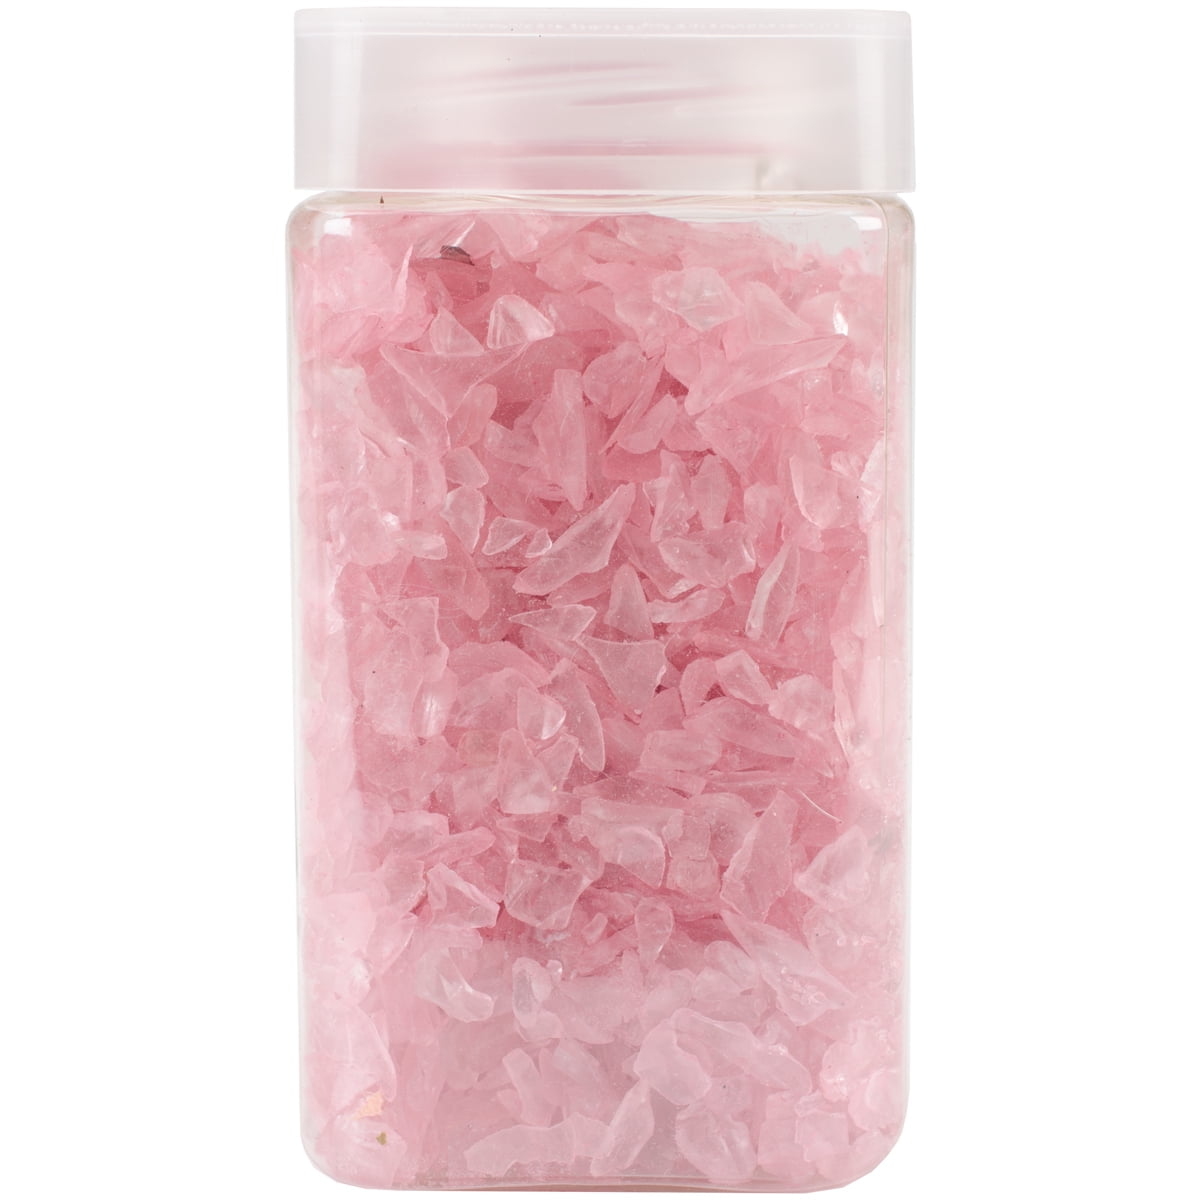 Crushed Glass Vase Filler 500gr - Pink